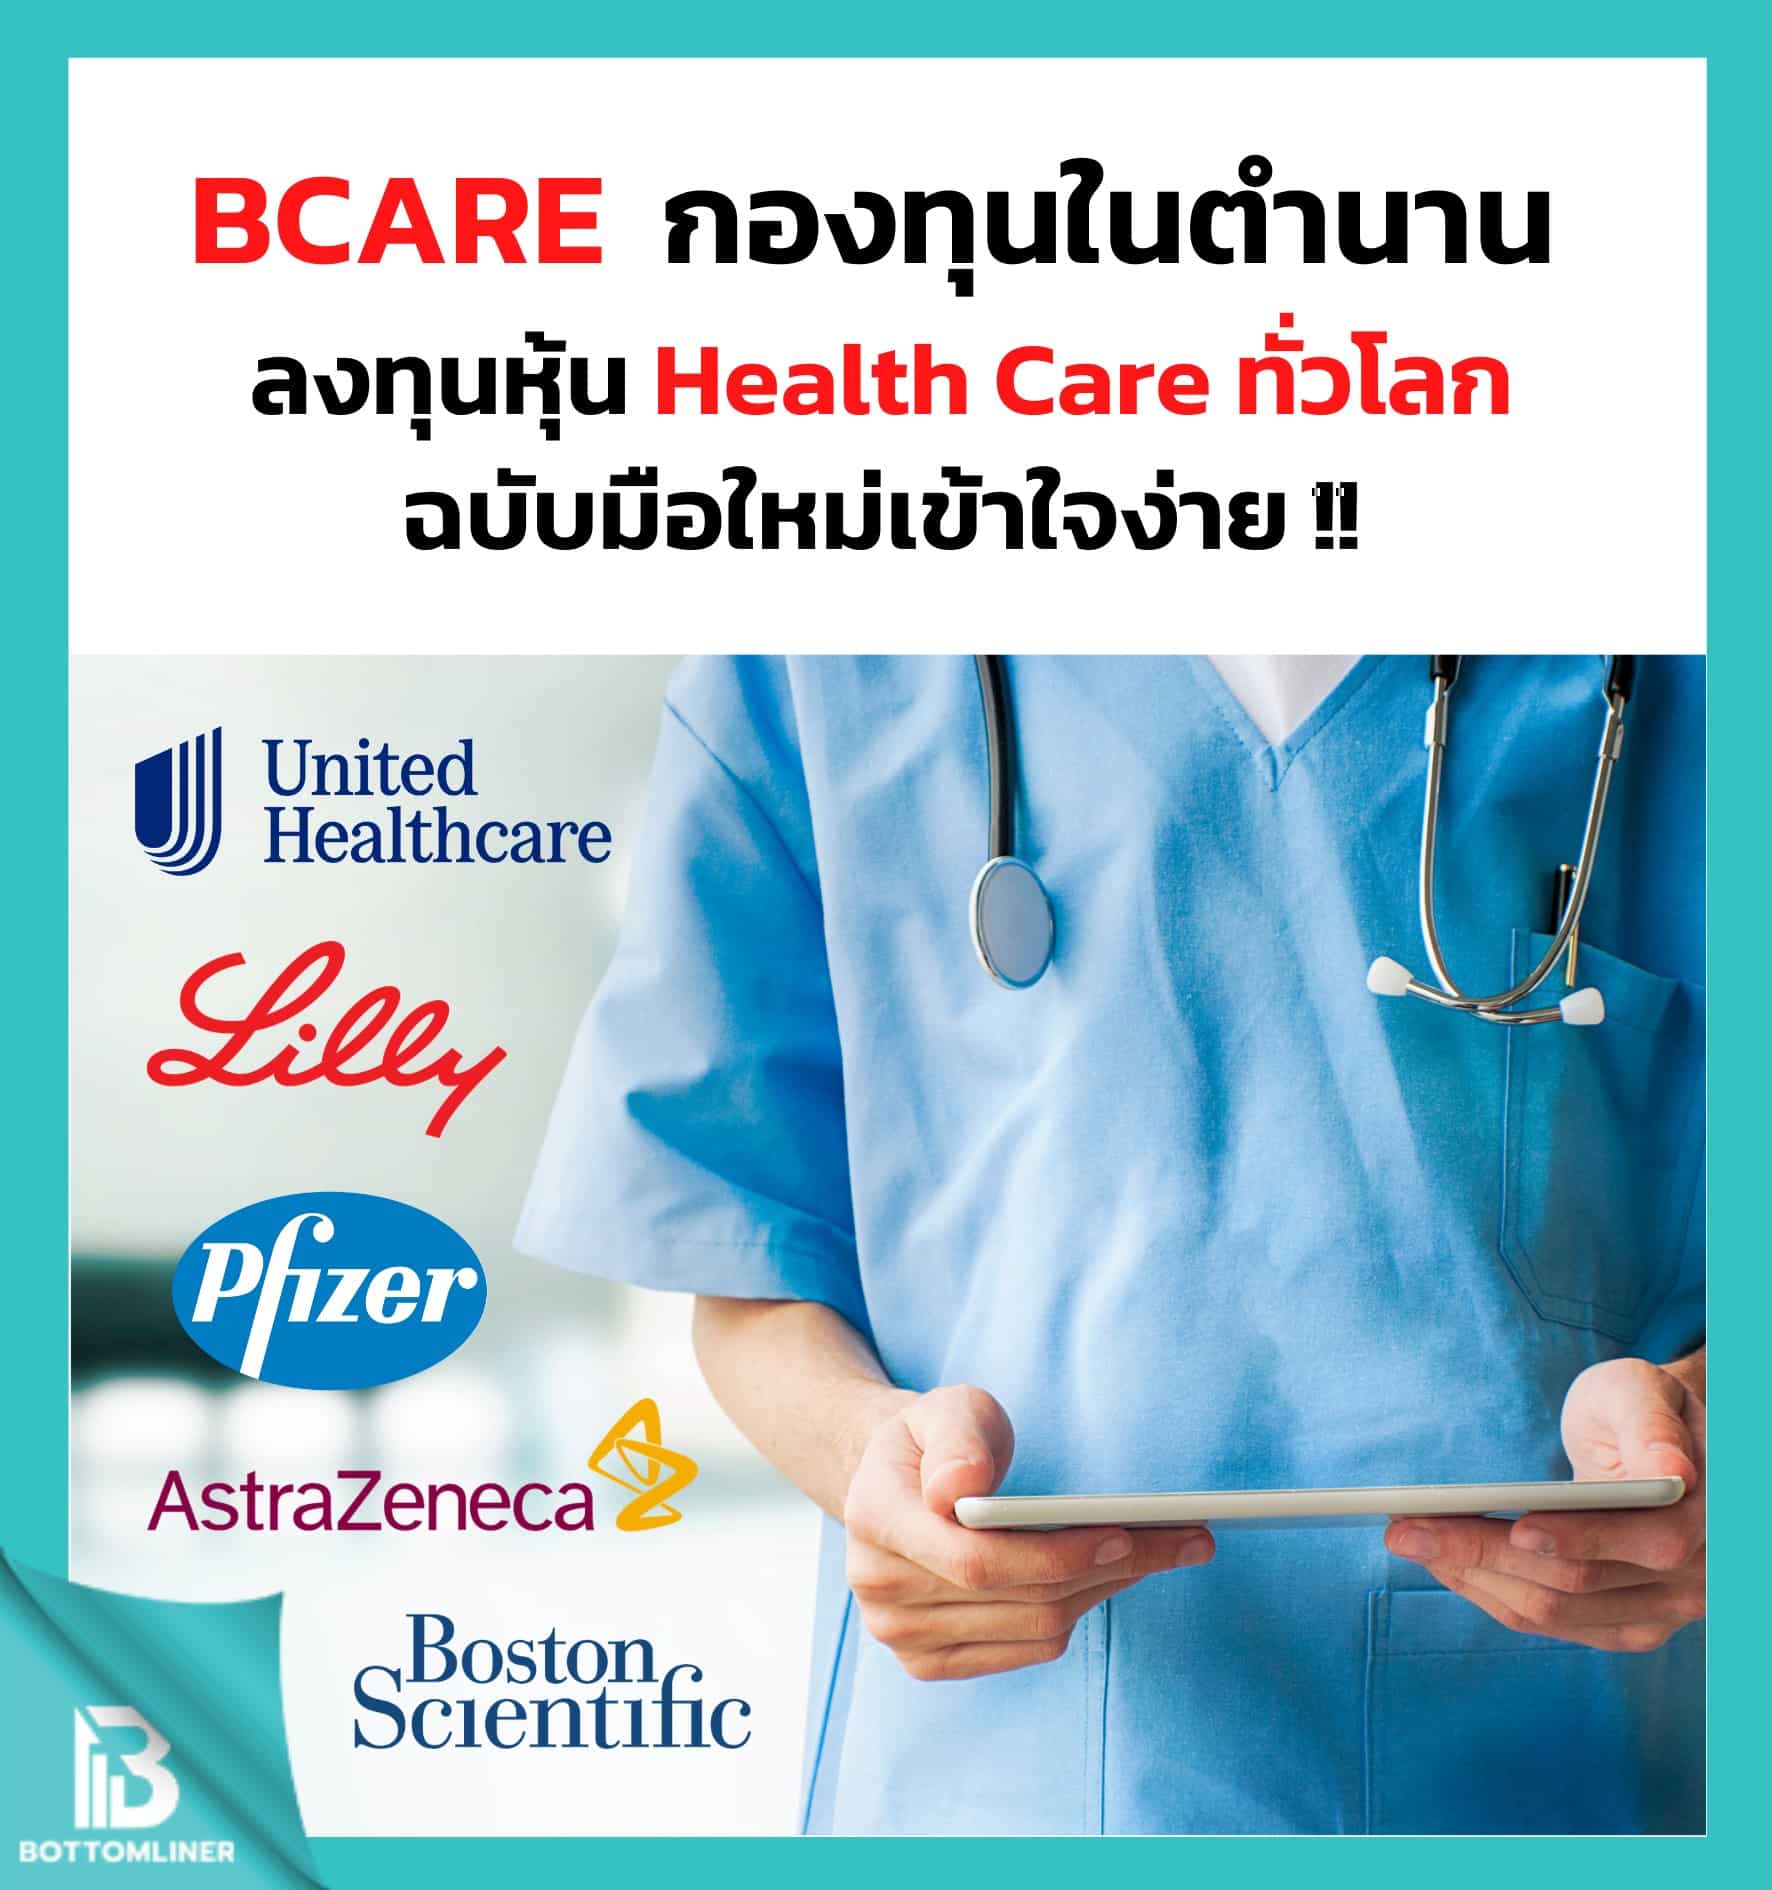 กองทุน BCARE : กองทุนในตำนานที่ลงทุนหุ้น Health Care ทั่วโลก